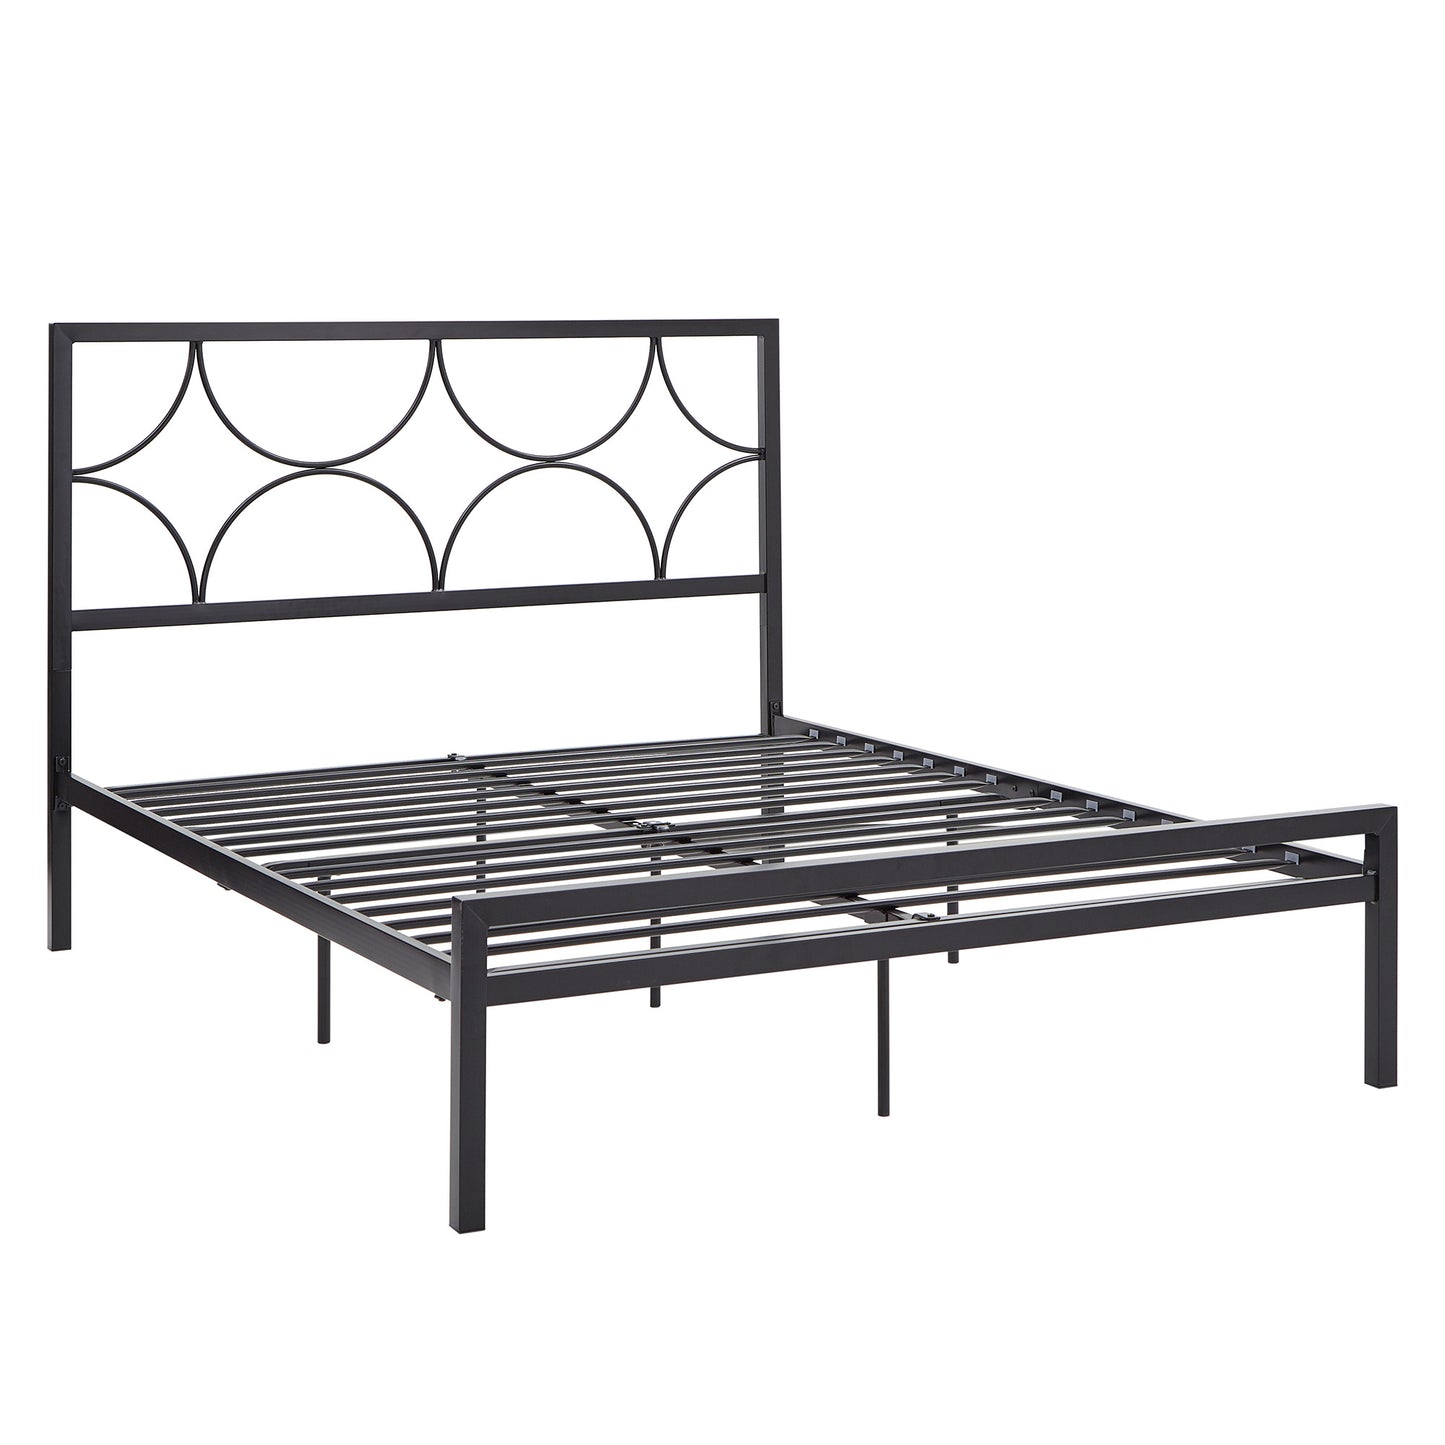 Metal Platform Bed with Twinkling Star Headboard - Black, Queen (Queen Size)